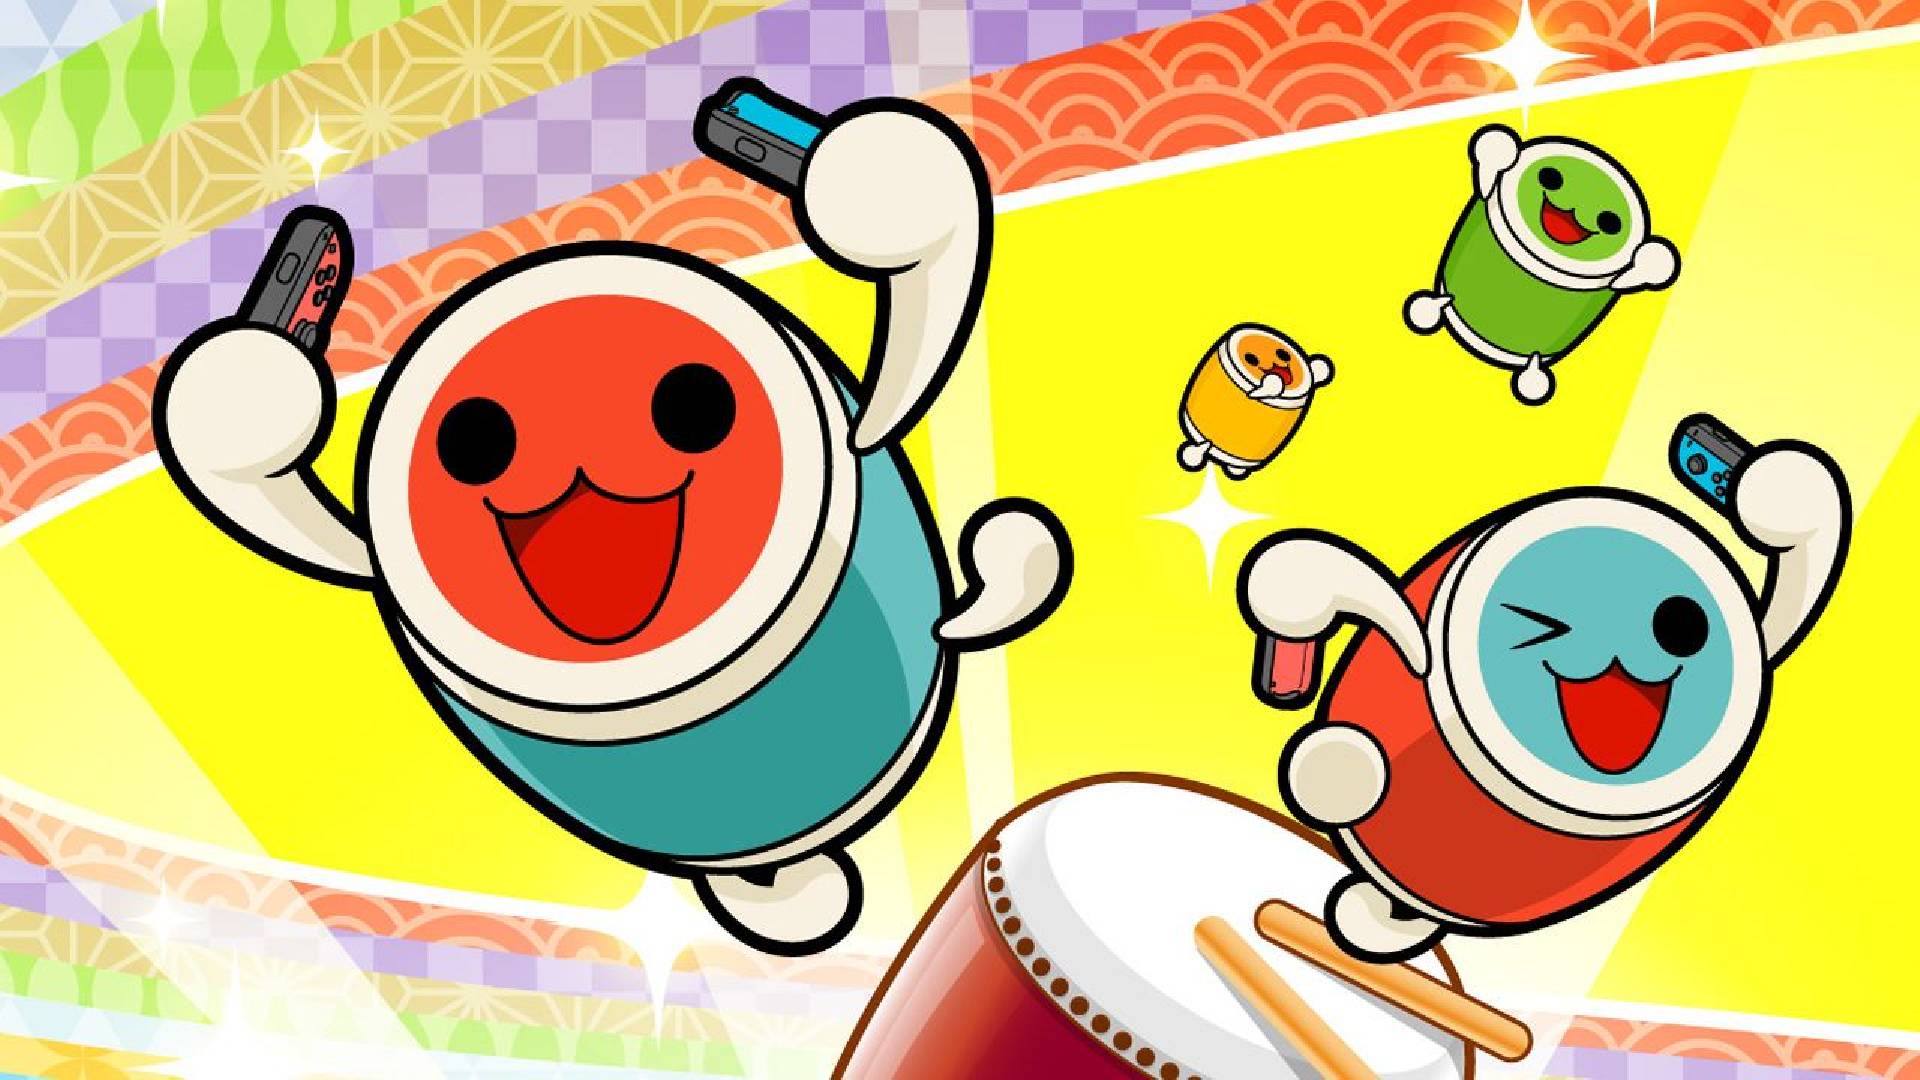 Taiko no Tatsujin: Drum 'n' Fun для Nintendo Switch прекращается 30 ноября